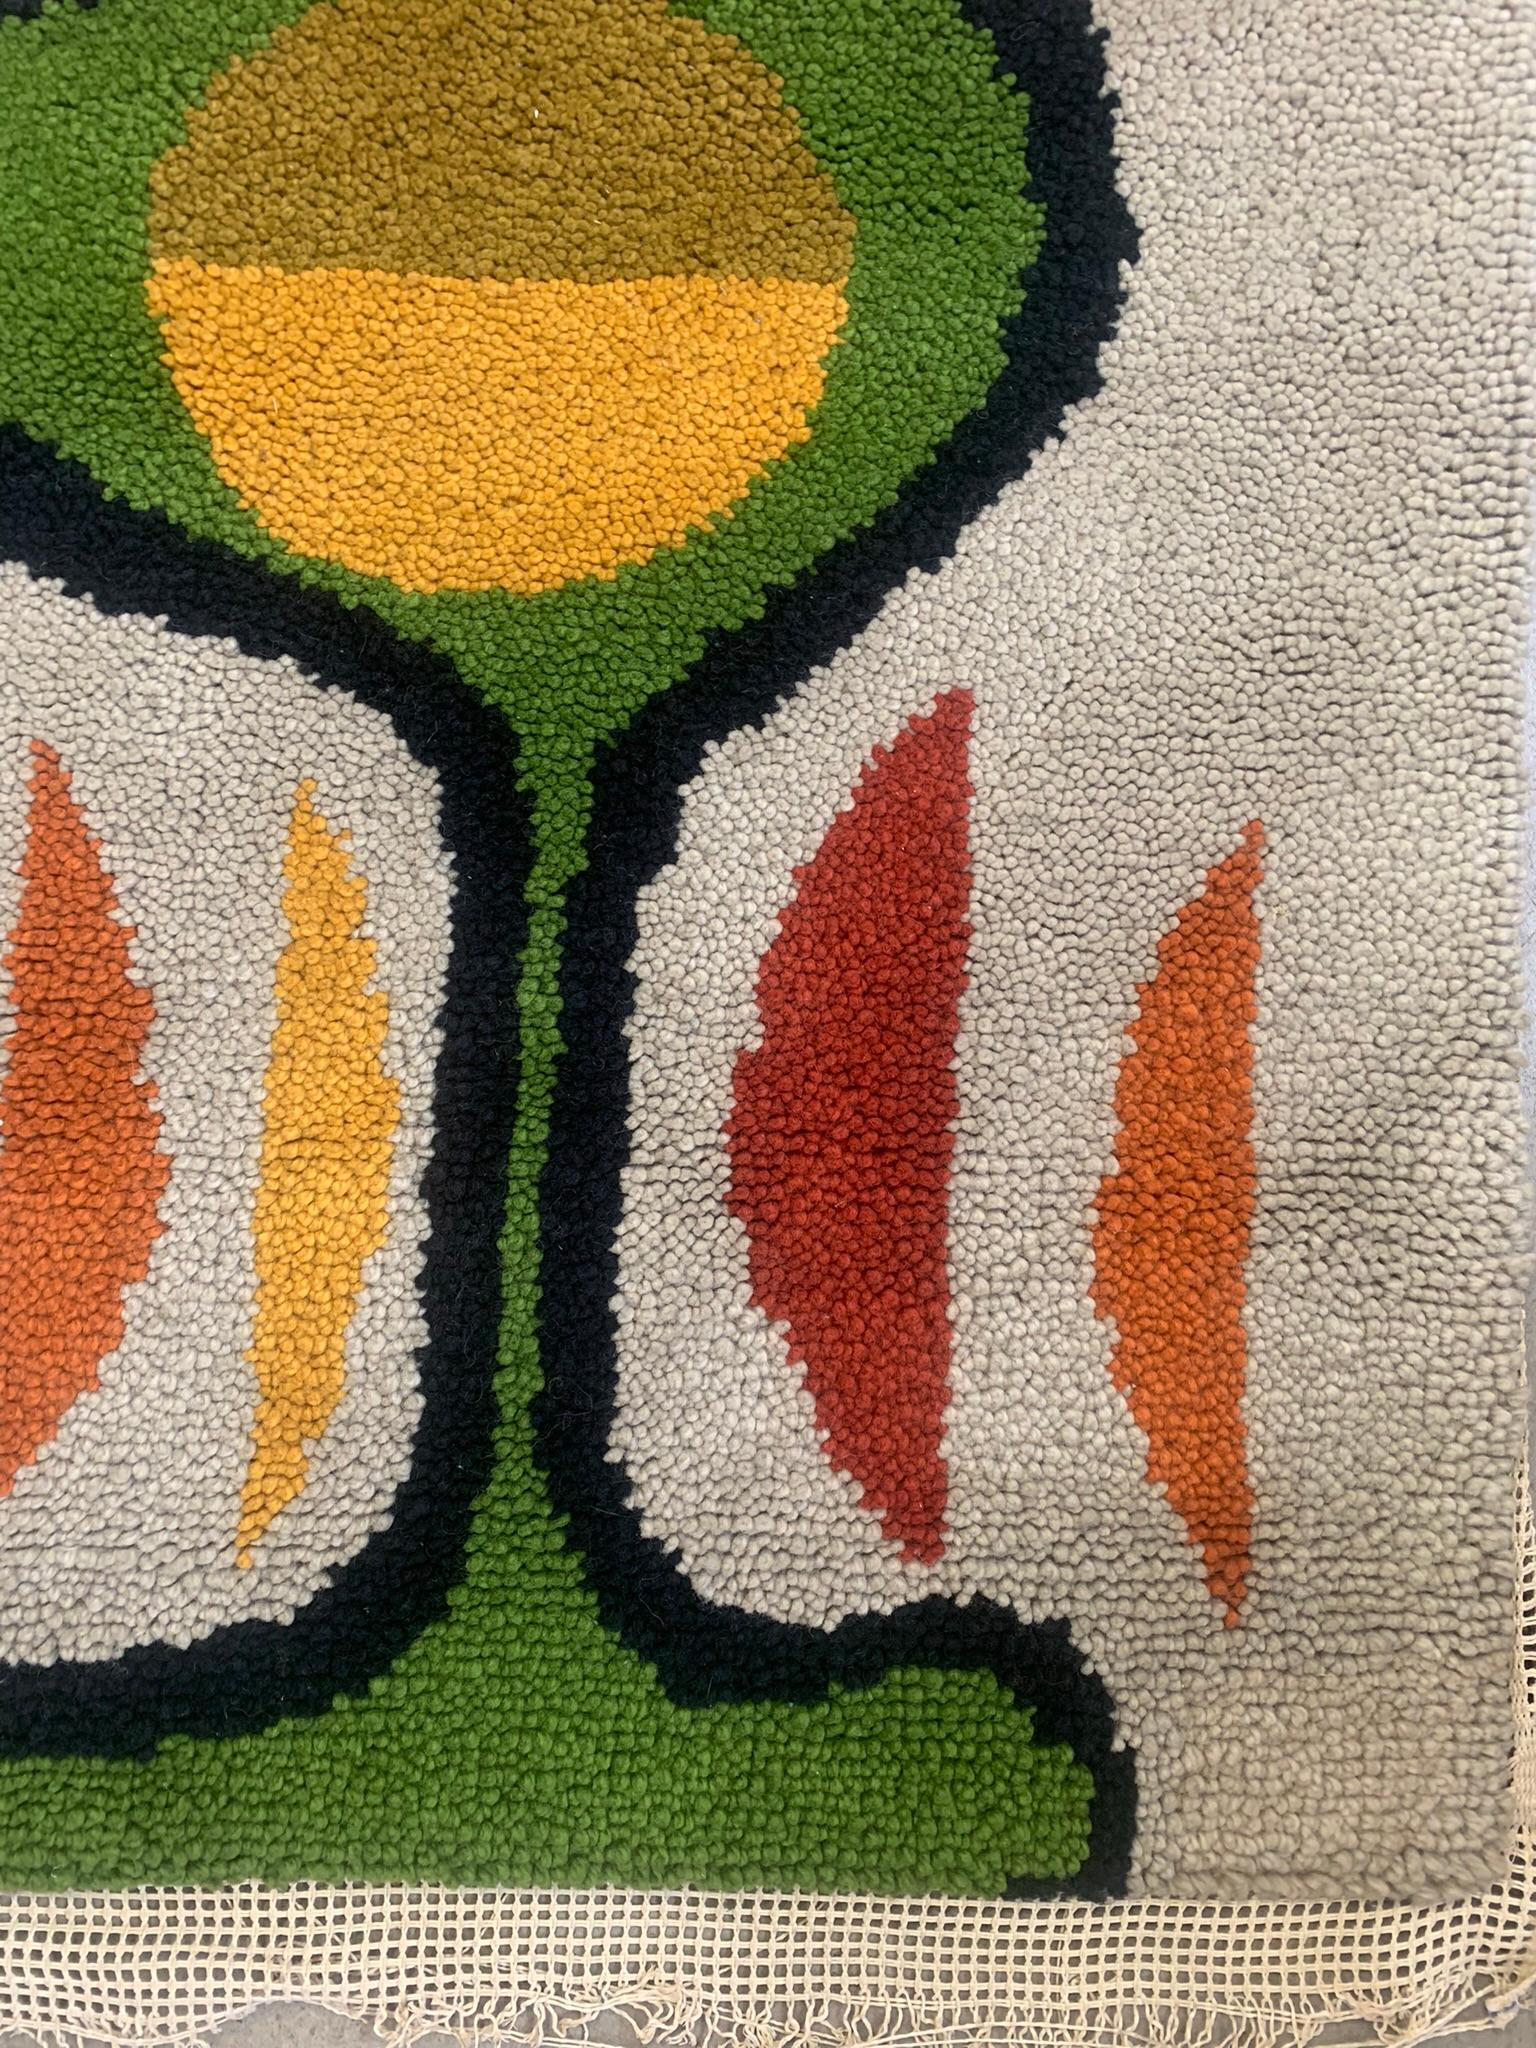 60s carpet